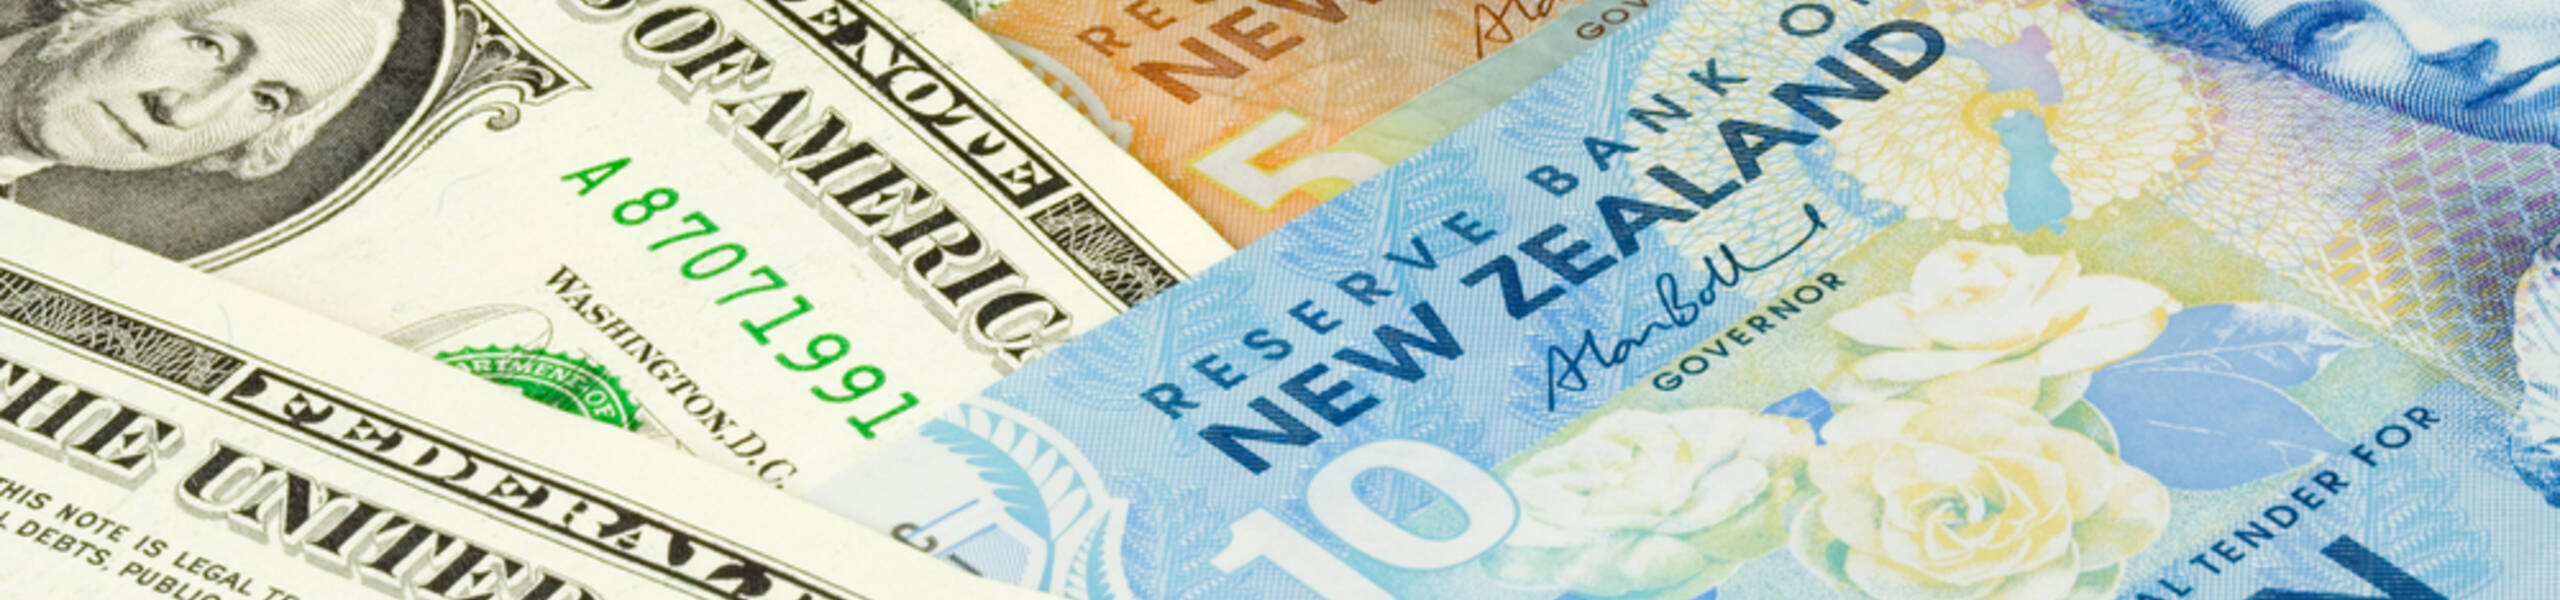 Kế hoạch giao dịch cặp ngoại tệ NZDUSD ngày 09/07/2019